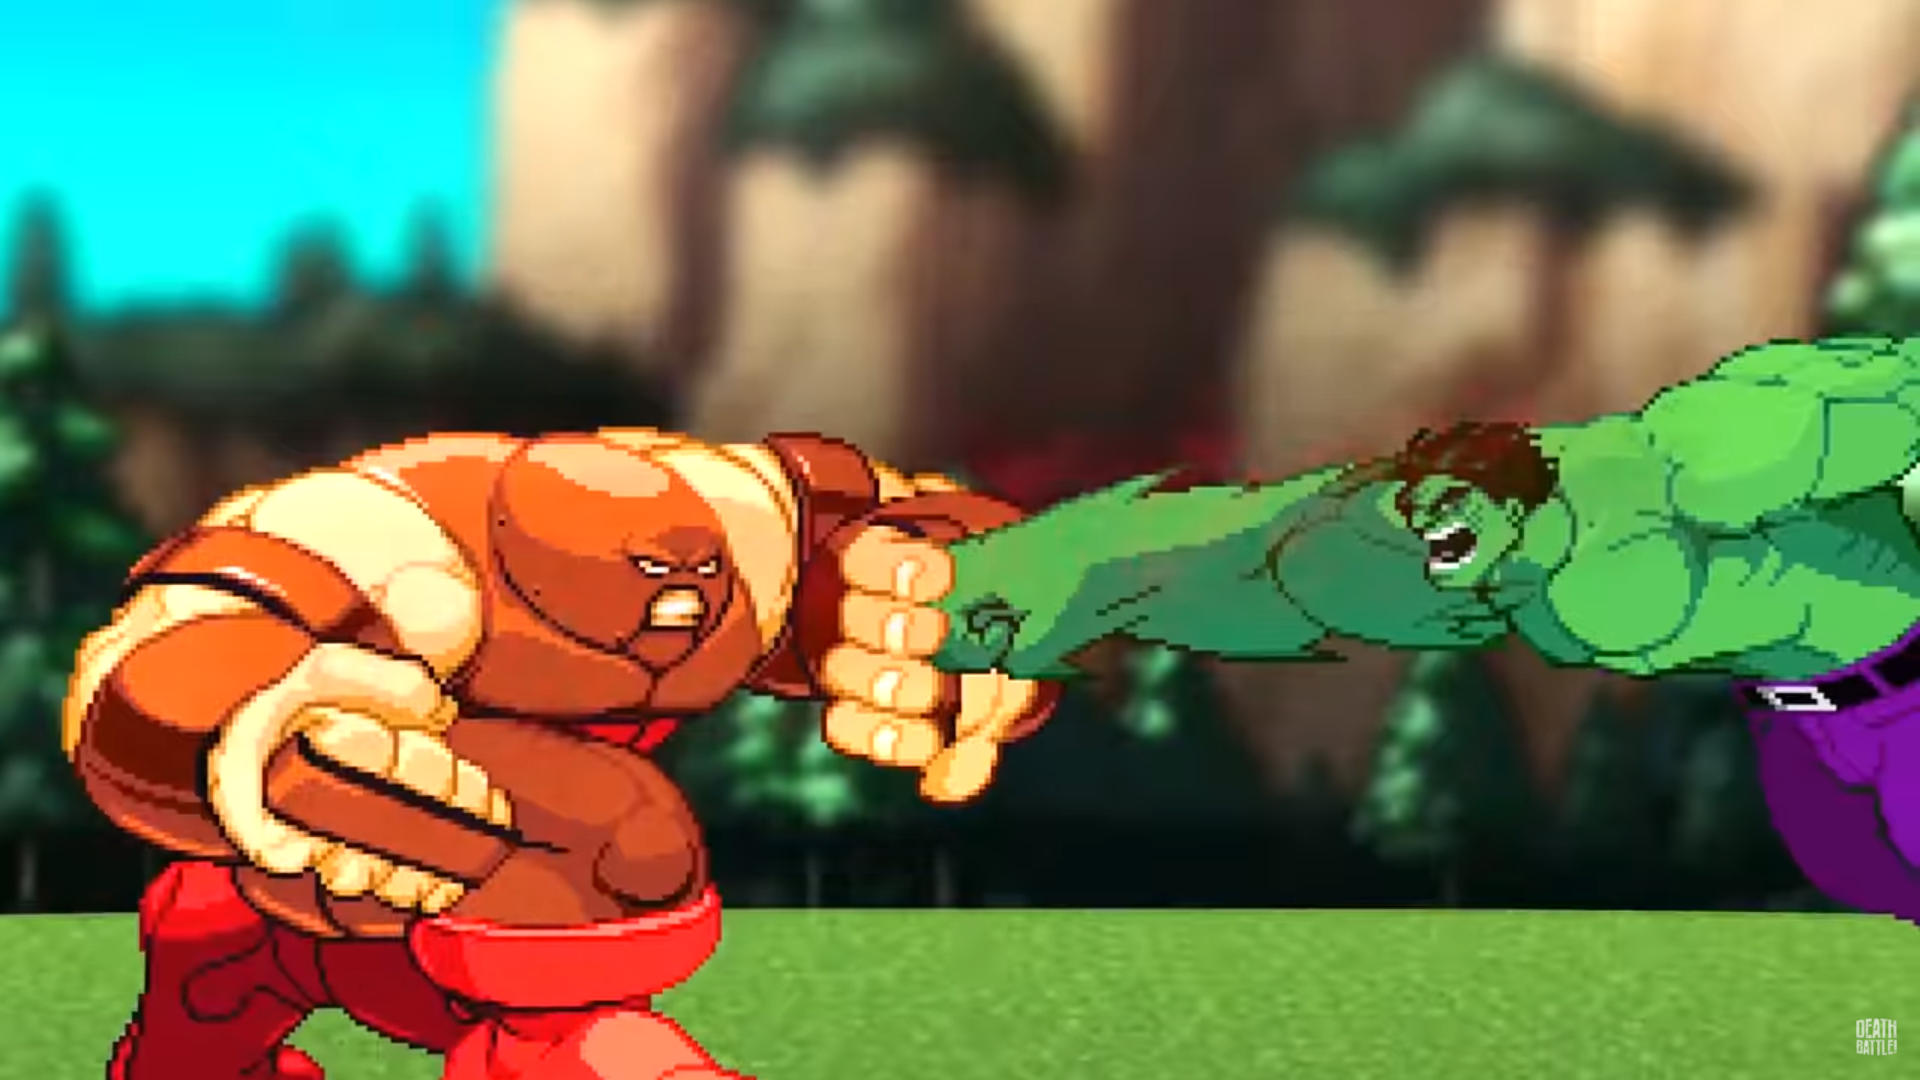 ultimate juggernaut vs hulk